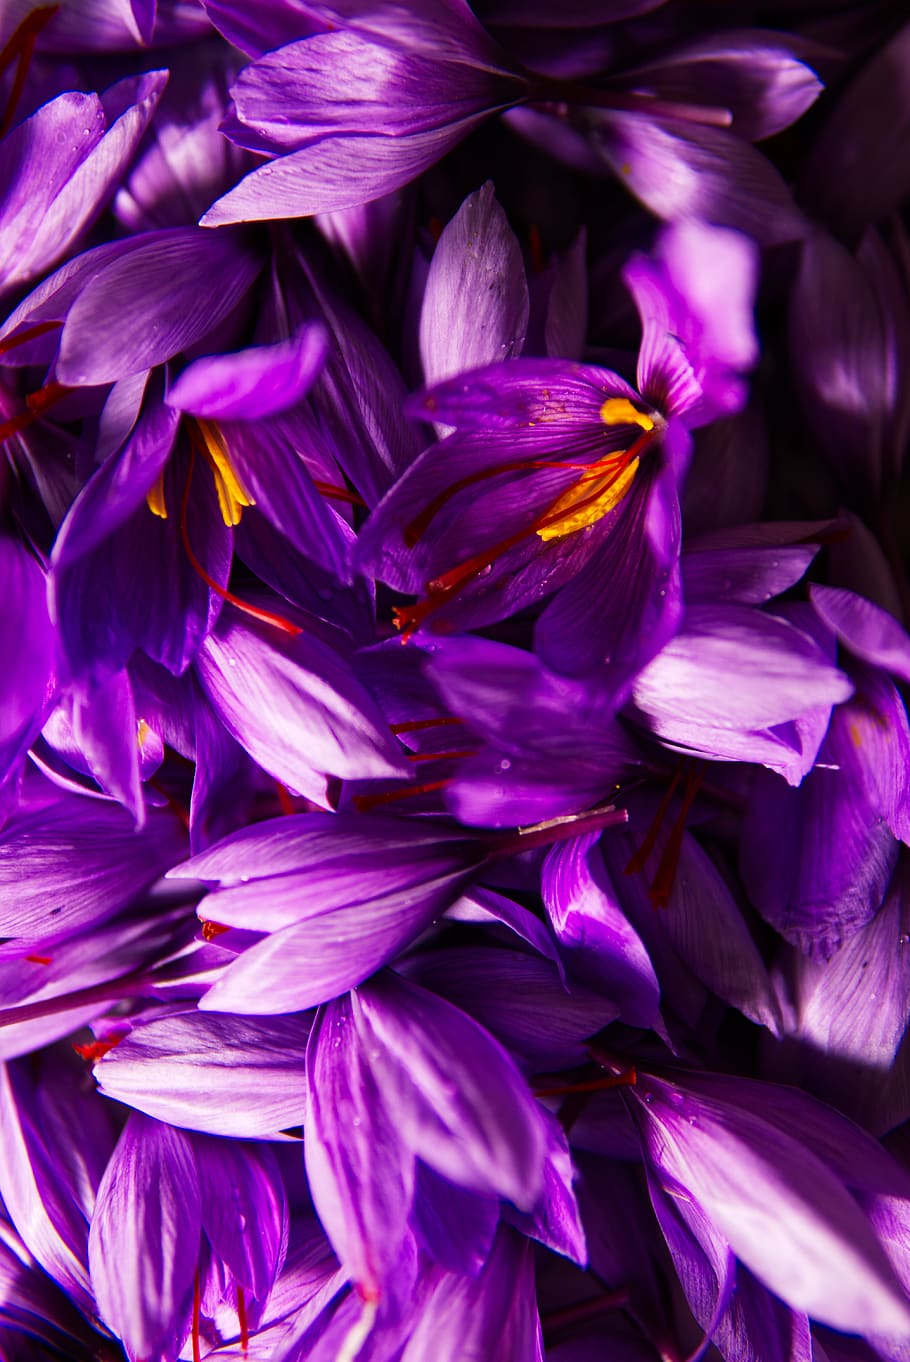 saffron, spice, pistils, pistils of saffron, harvest, flowers, red gold, health, plantation, poitiers